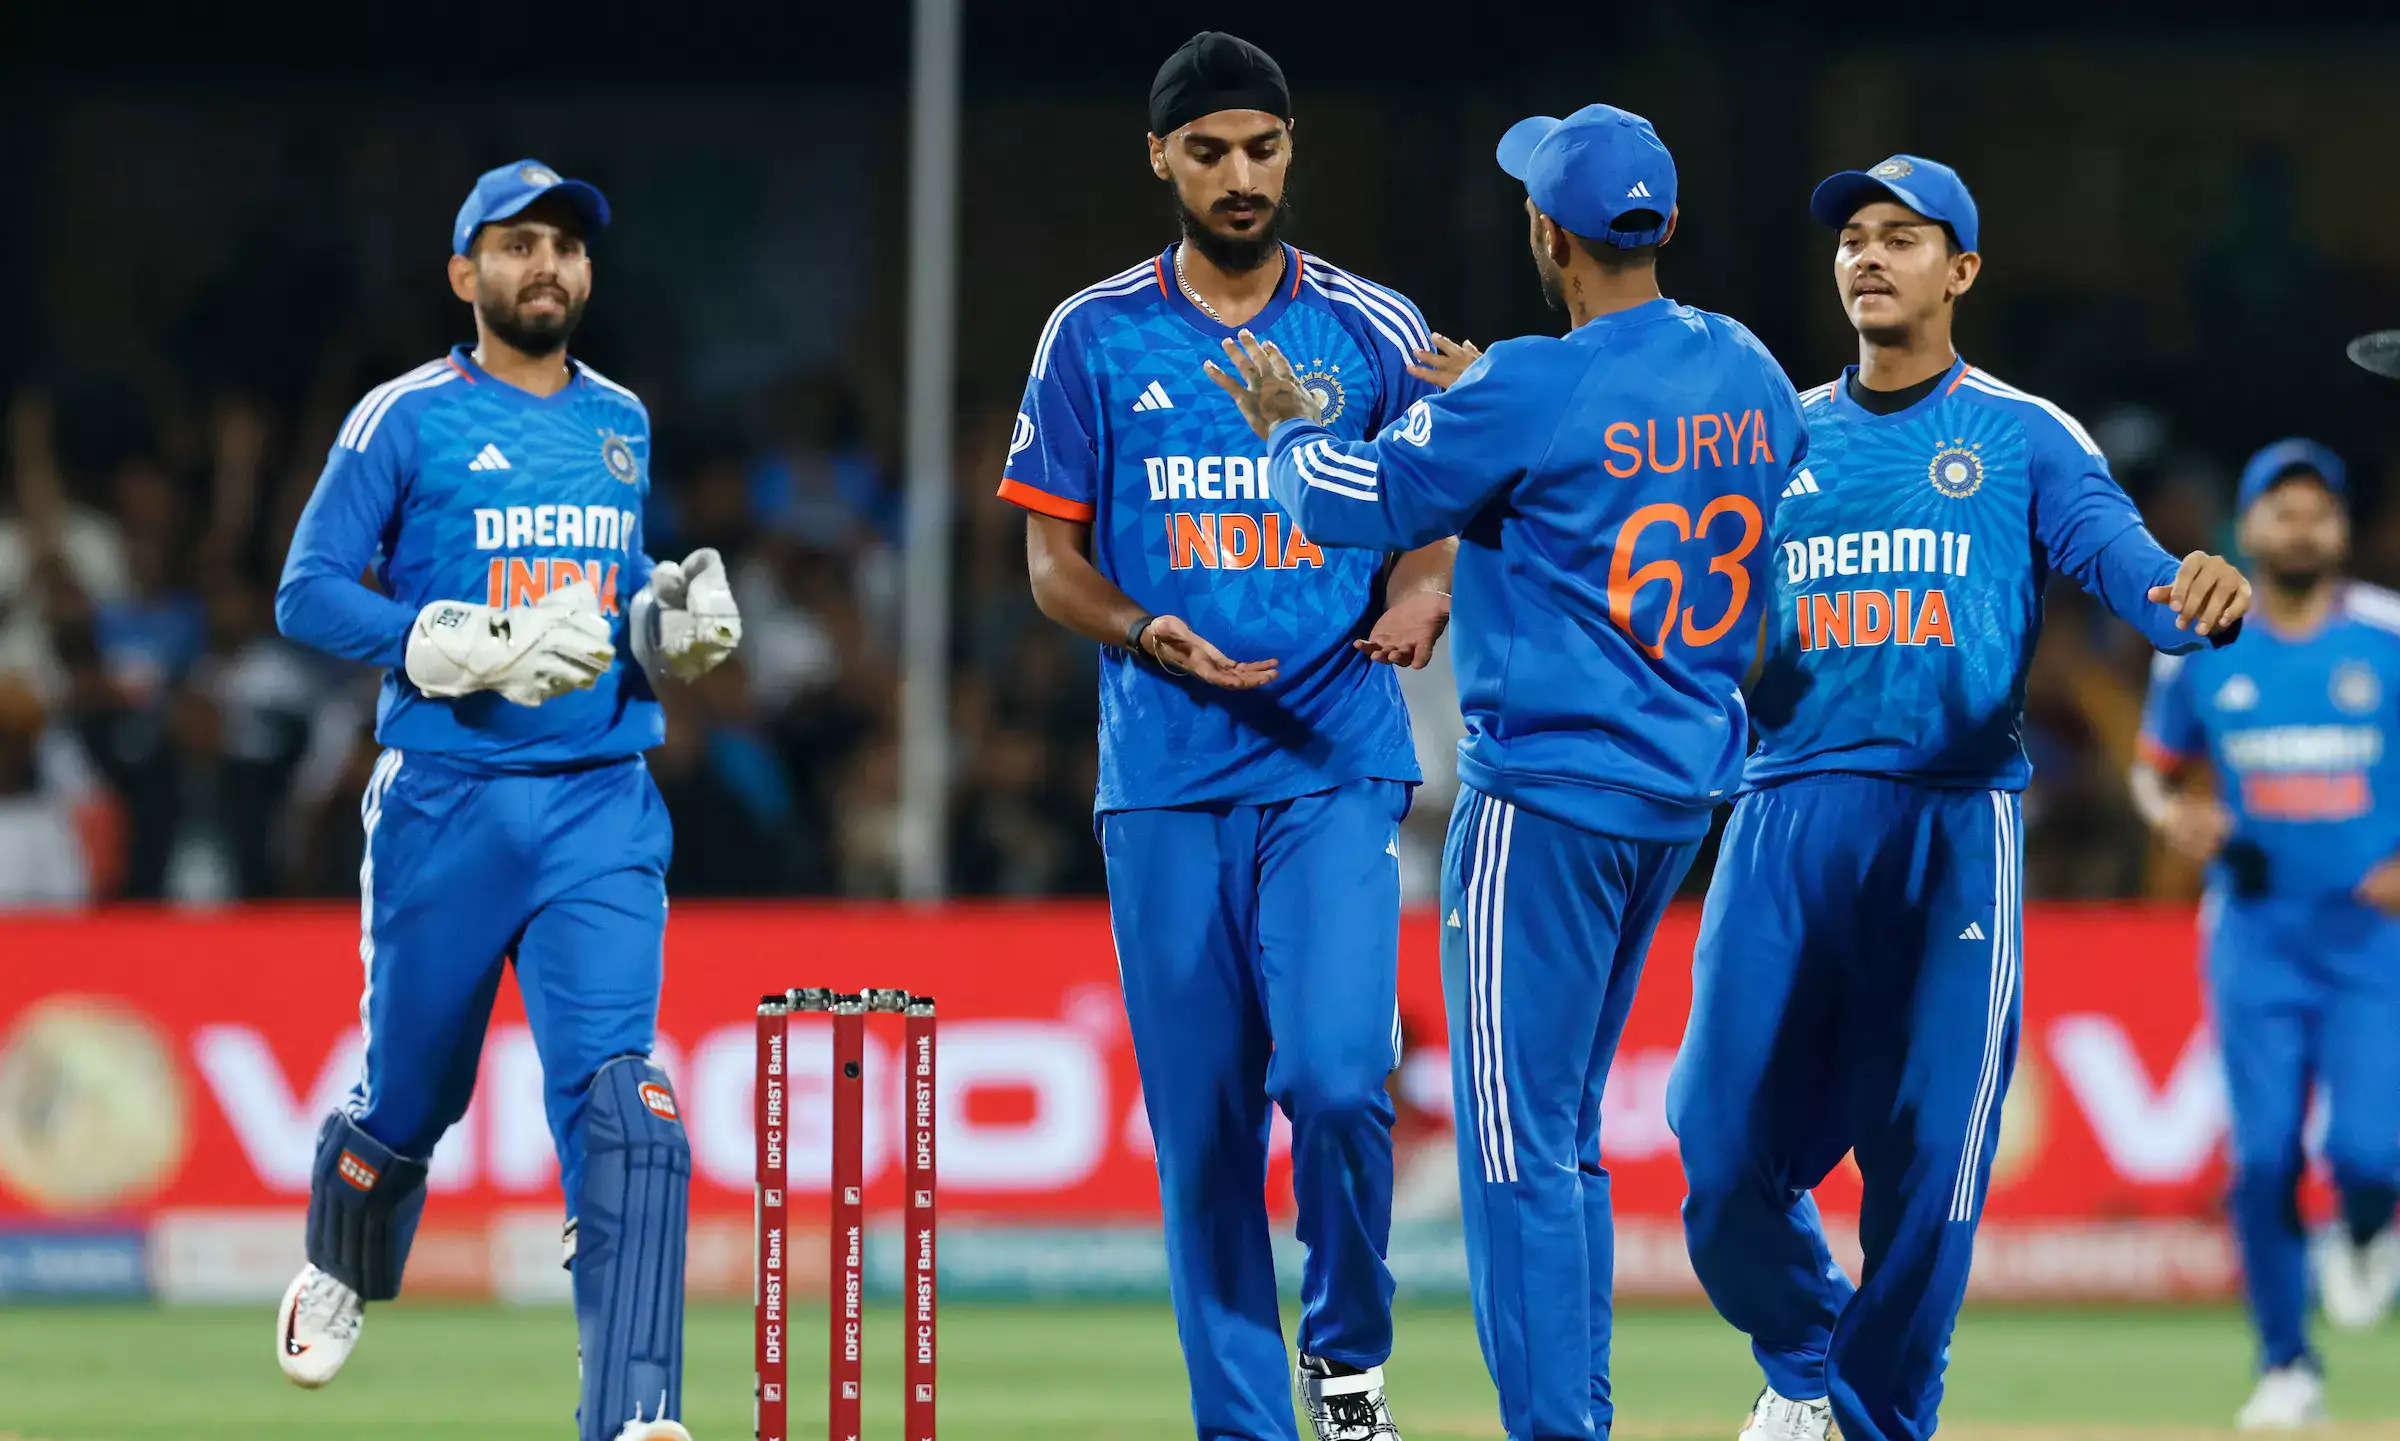 भारत और ऑस्ट्रेलिया के बीच टी20 क्रिकेट सीरीज का अंतिम मुकाबला रोमांचक साबित हुआ, जिससे प्रशंसक अपनी सीटों से खड़े हो गए। बेंगलुरू के चिन्नास्वामी स्टेडियम में आयोजित यह मैच बेहद रोमांचक क्षणों के साथ शुरू हुआ और भारत ने छह रन से जीत हासिल की और अंततः श्रृंखला 4-1 से जीत ली।